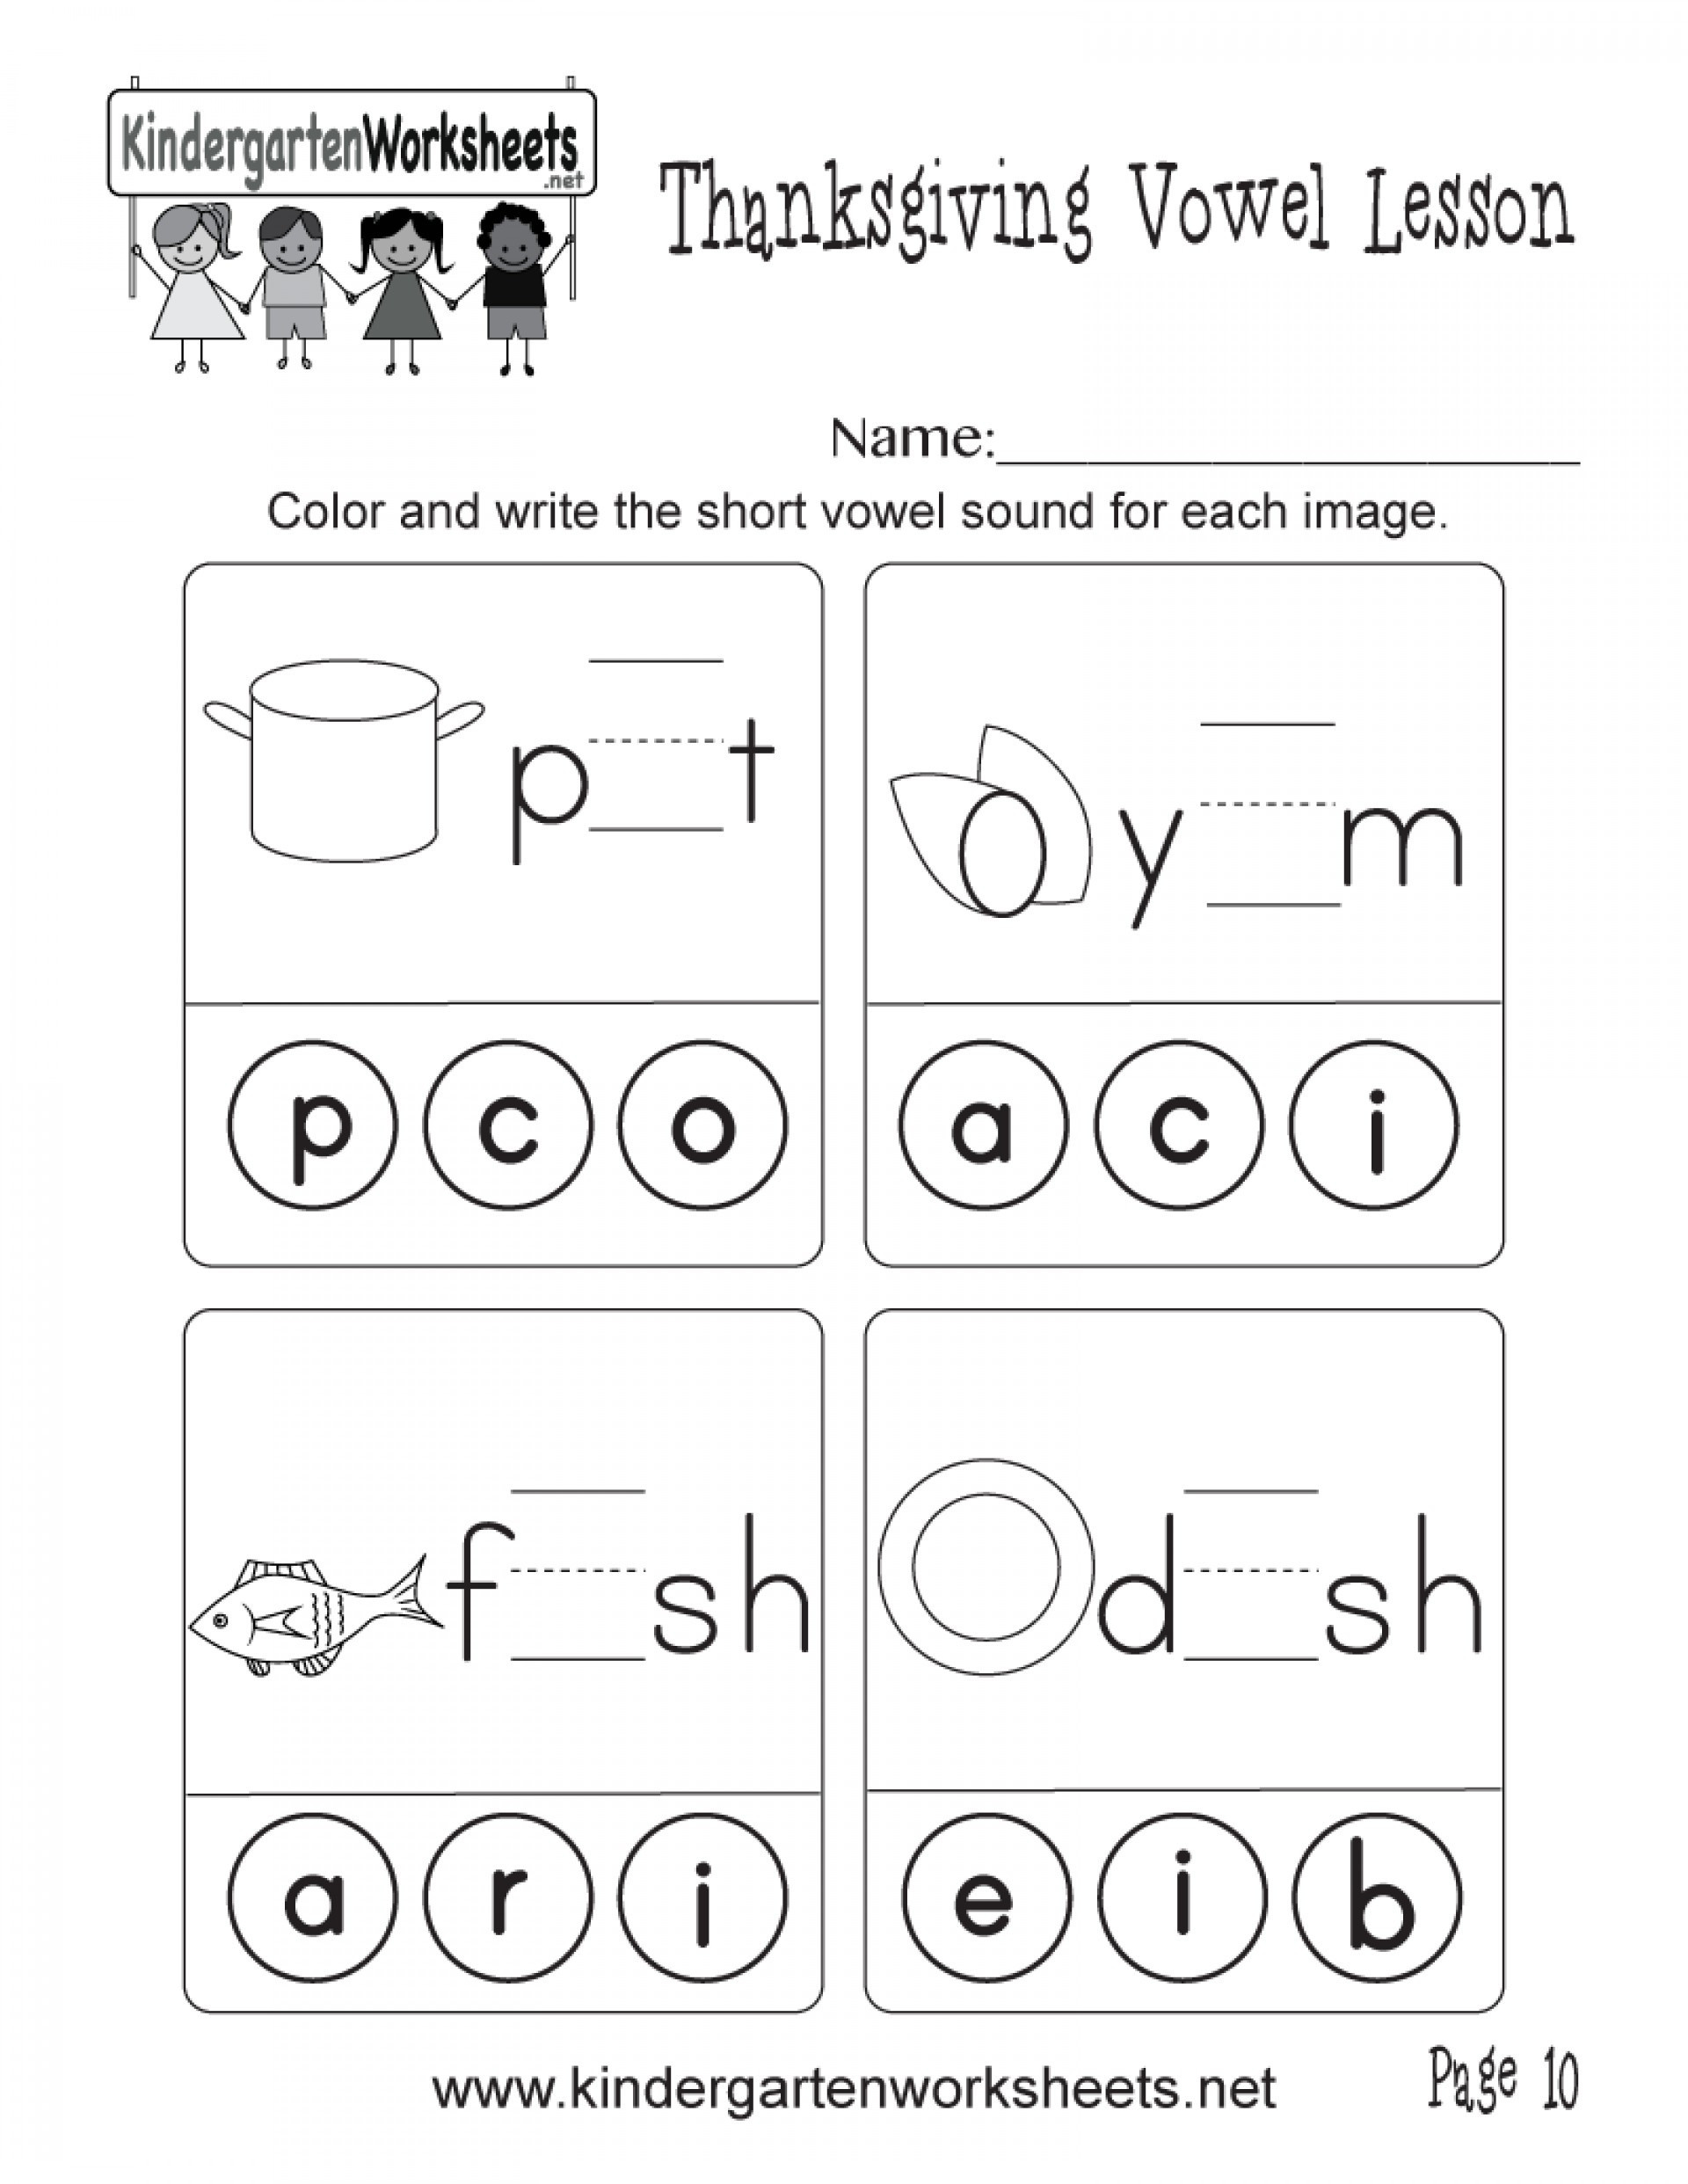 Short Vowel Worksheet Kindergarten 6 Long and Short Vowel sounds Worksheets – Learning Worksheets